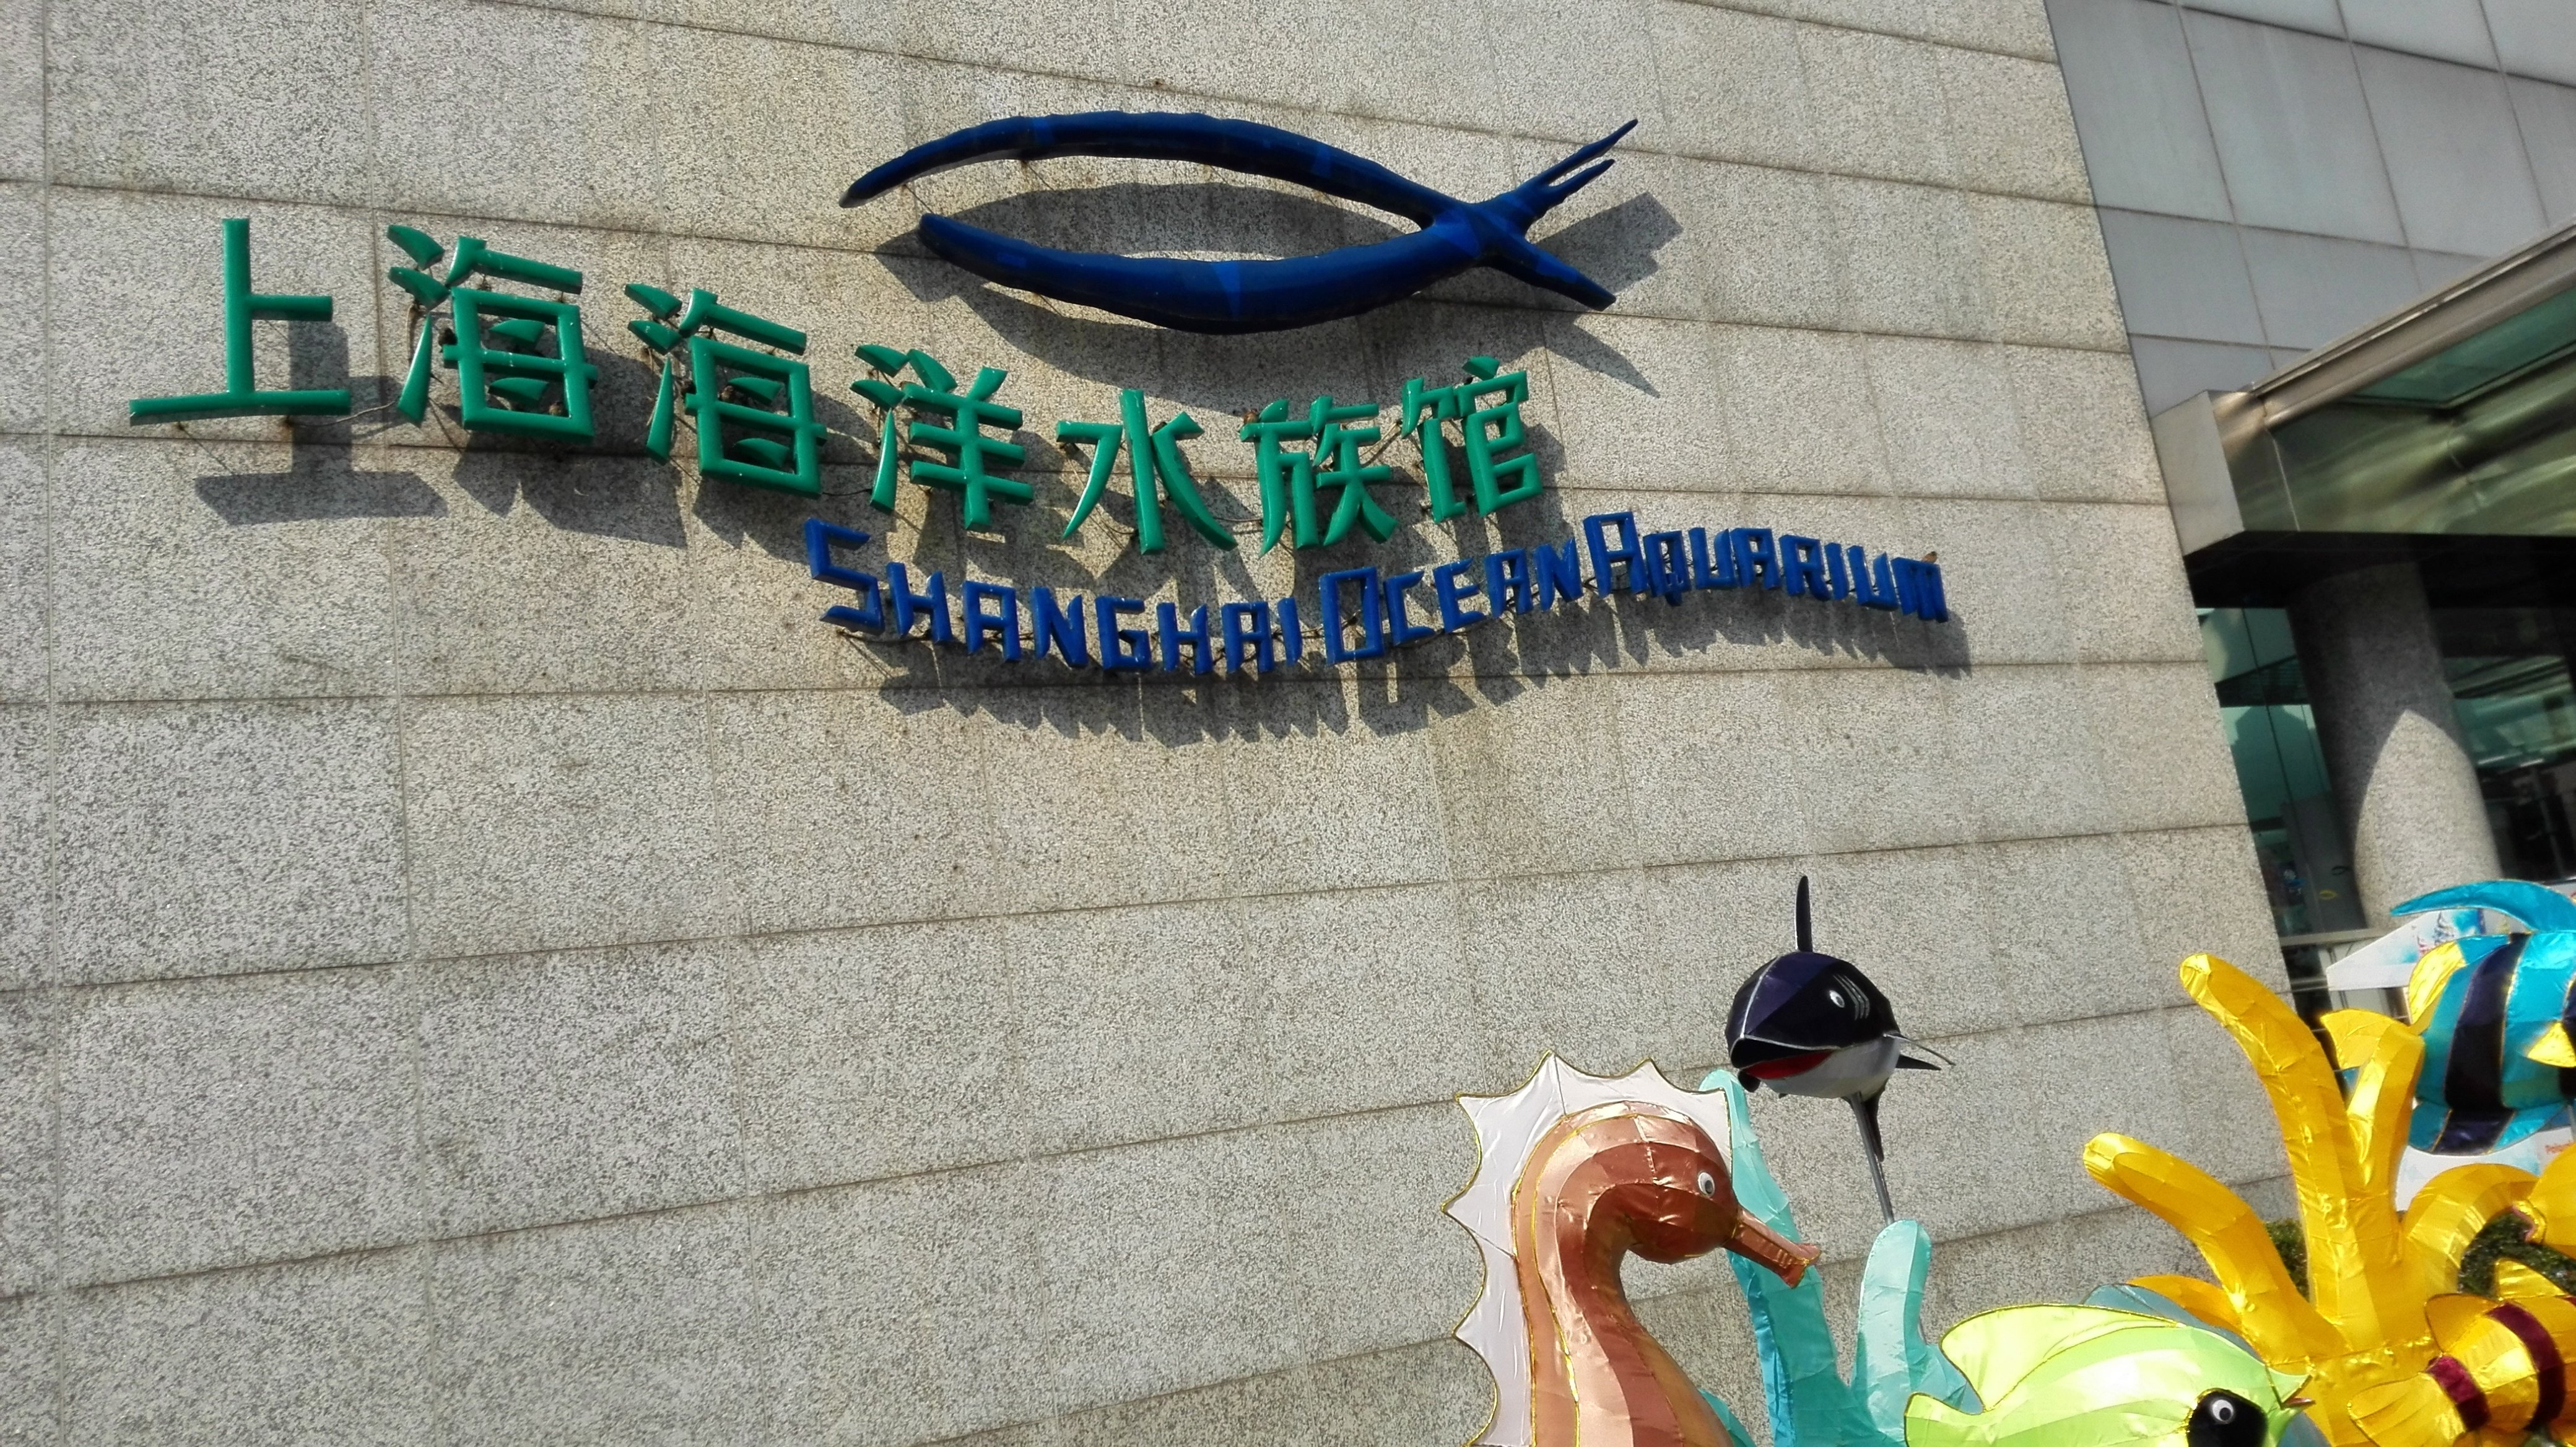 上海海洋水族馆简介图片